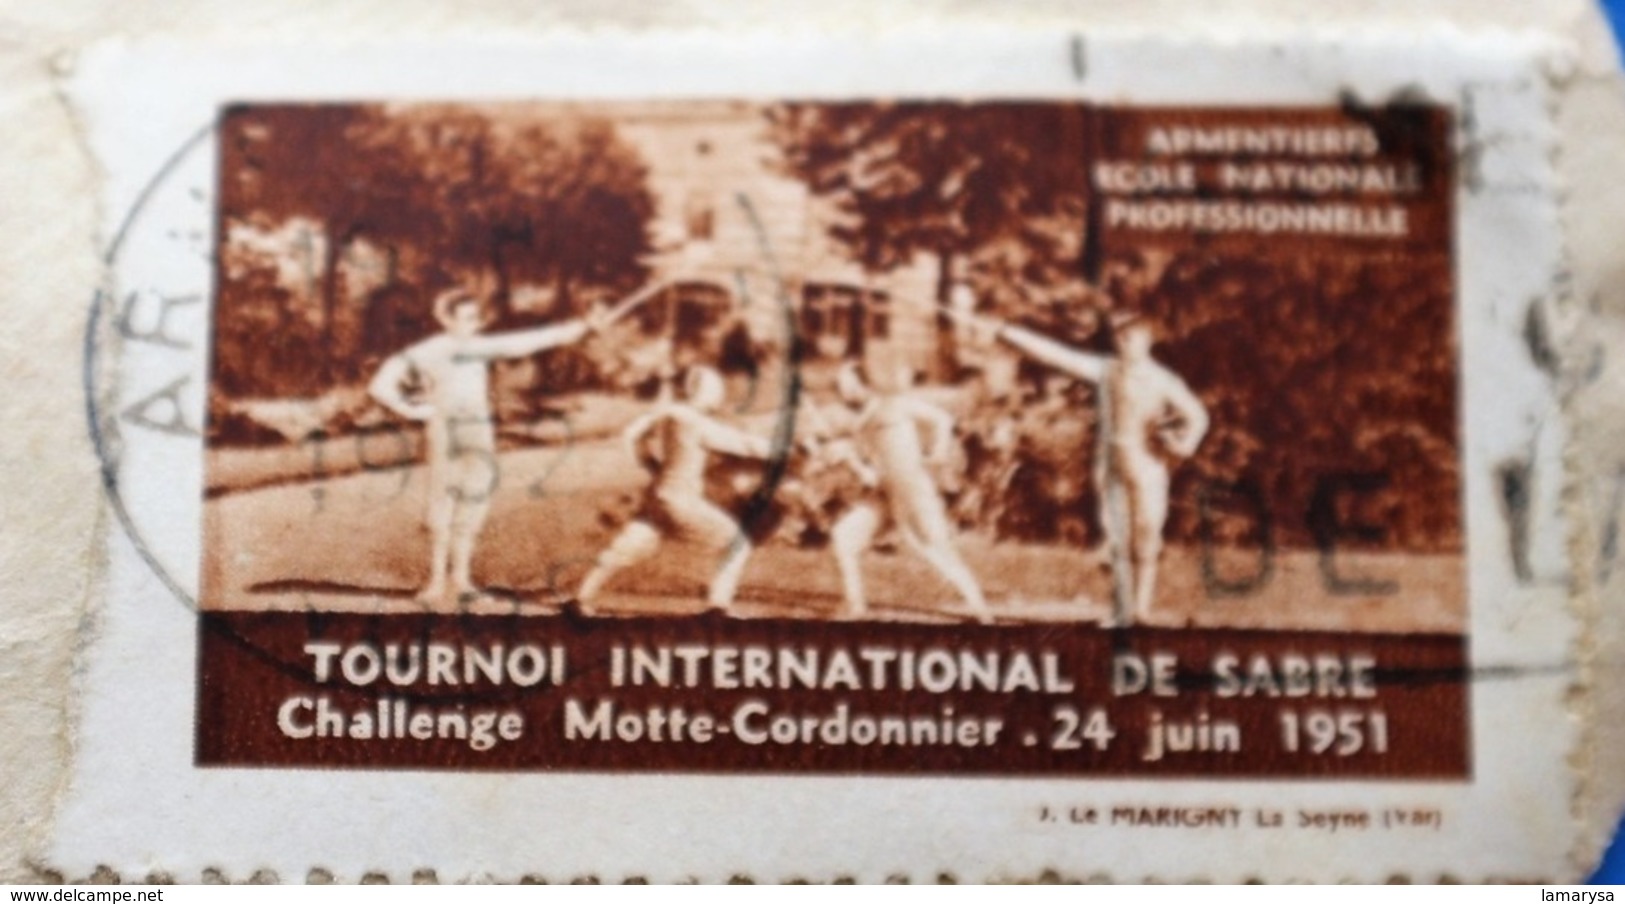 ARMENTIÈRES 1951 TOURNOI INTERNATIONAL DE SABRE CHALLE MAÎTRE CORDONNIER Vignette-Erinnophilie,Timbre,stamp,Bollo-Viñeta - Deportes